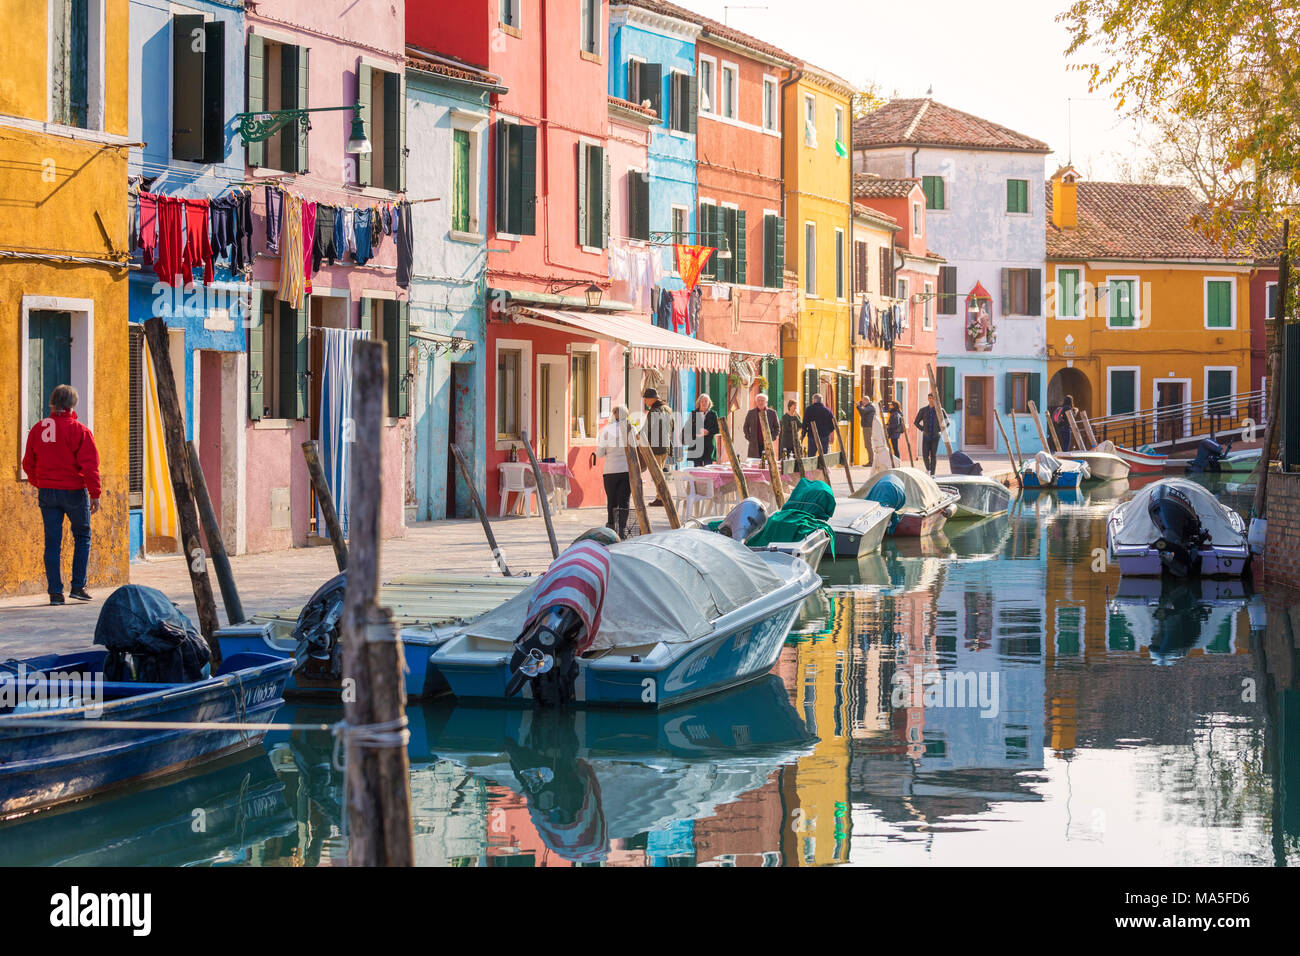 Una vivace strada di Burano, le case colorate si affacciano sul canale e la gente a piedi, isola di Burano, Venezia, Veneto, Italia Foto Stock